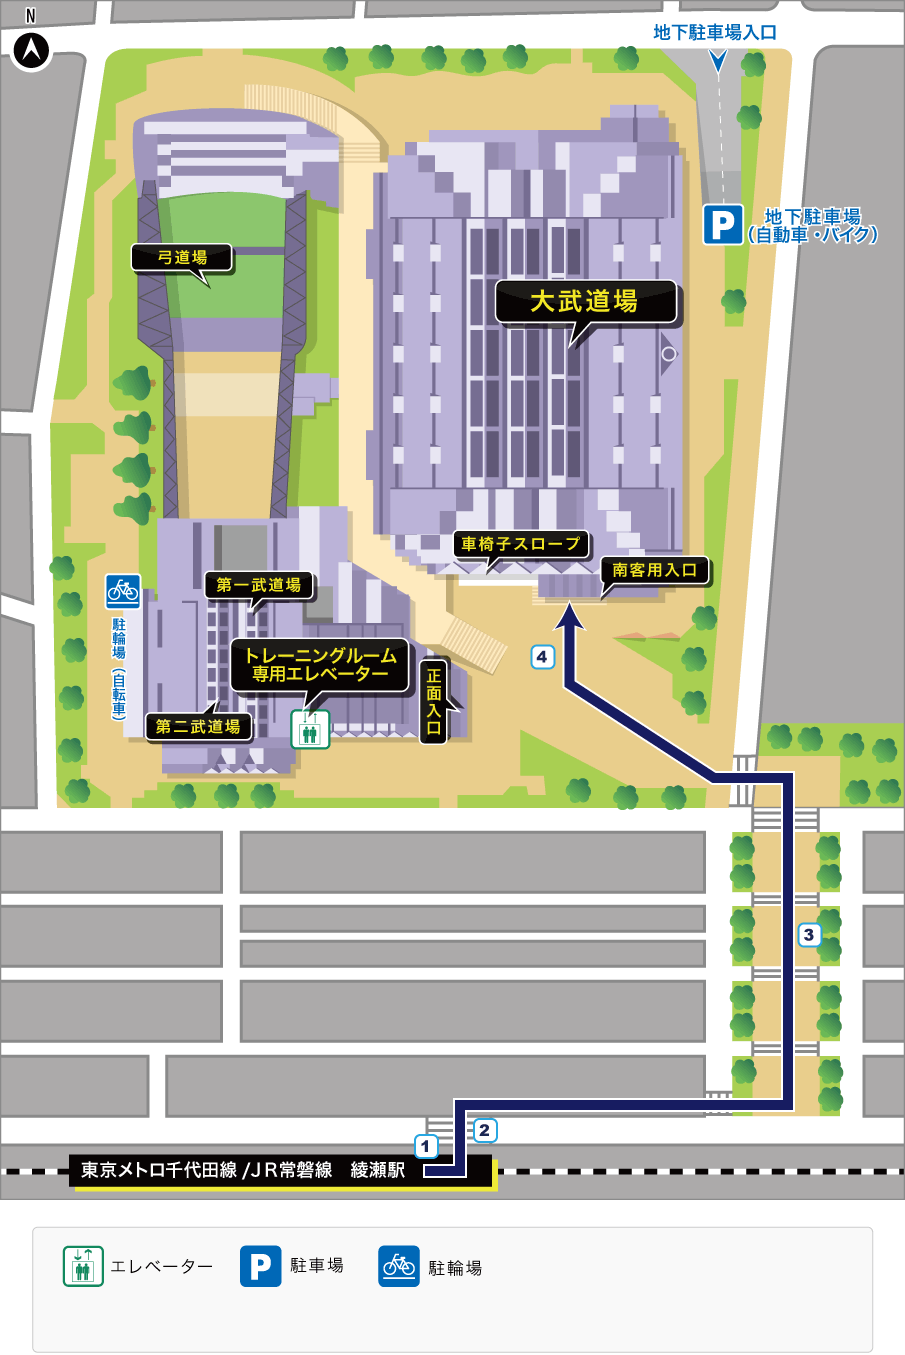 綾瀬駅から「大武道場」へのルート案内見取り図